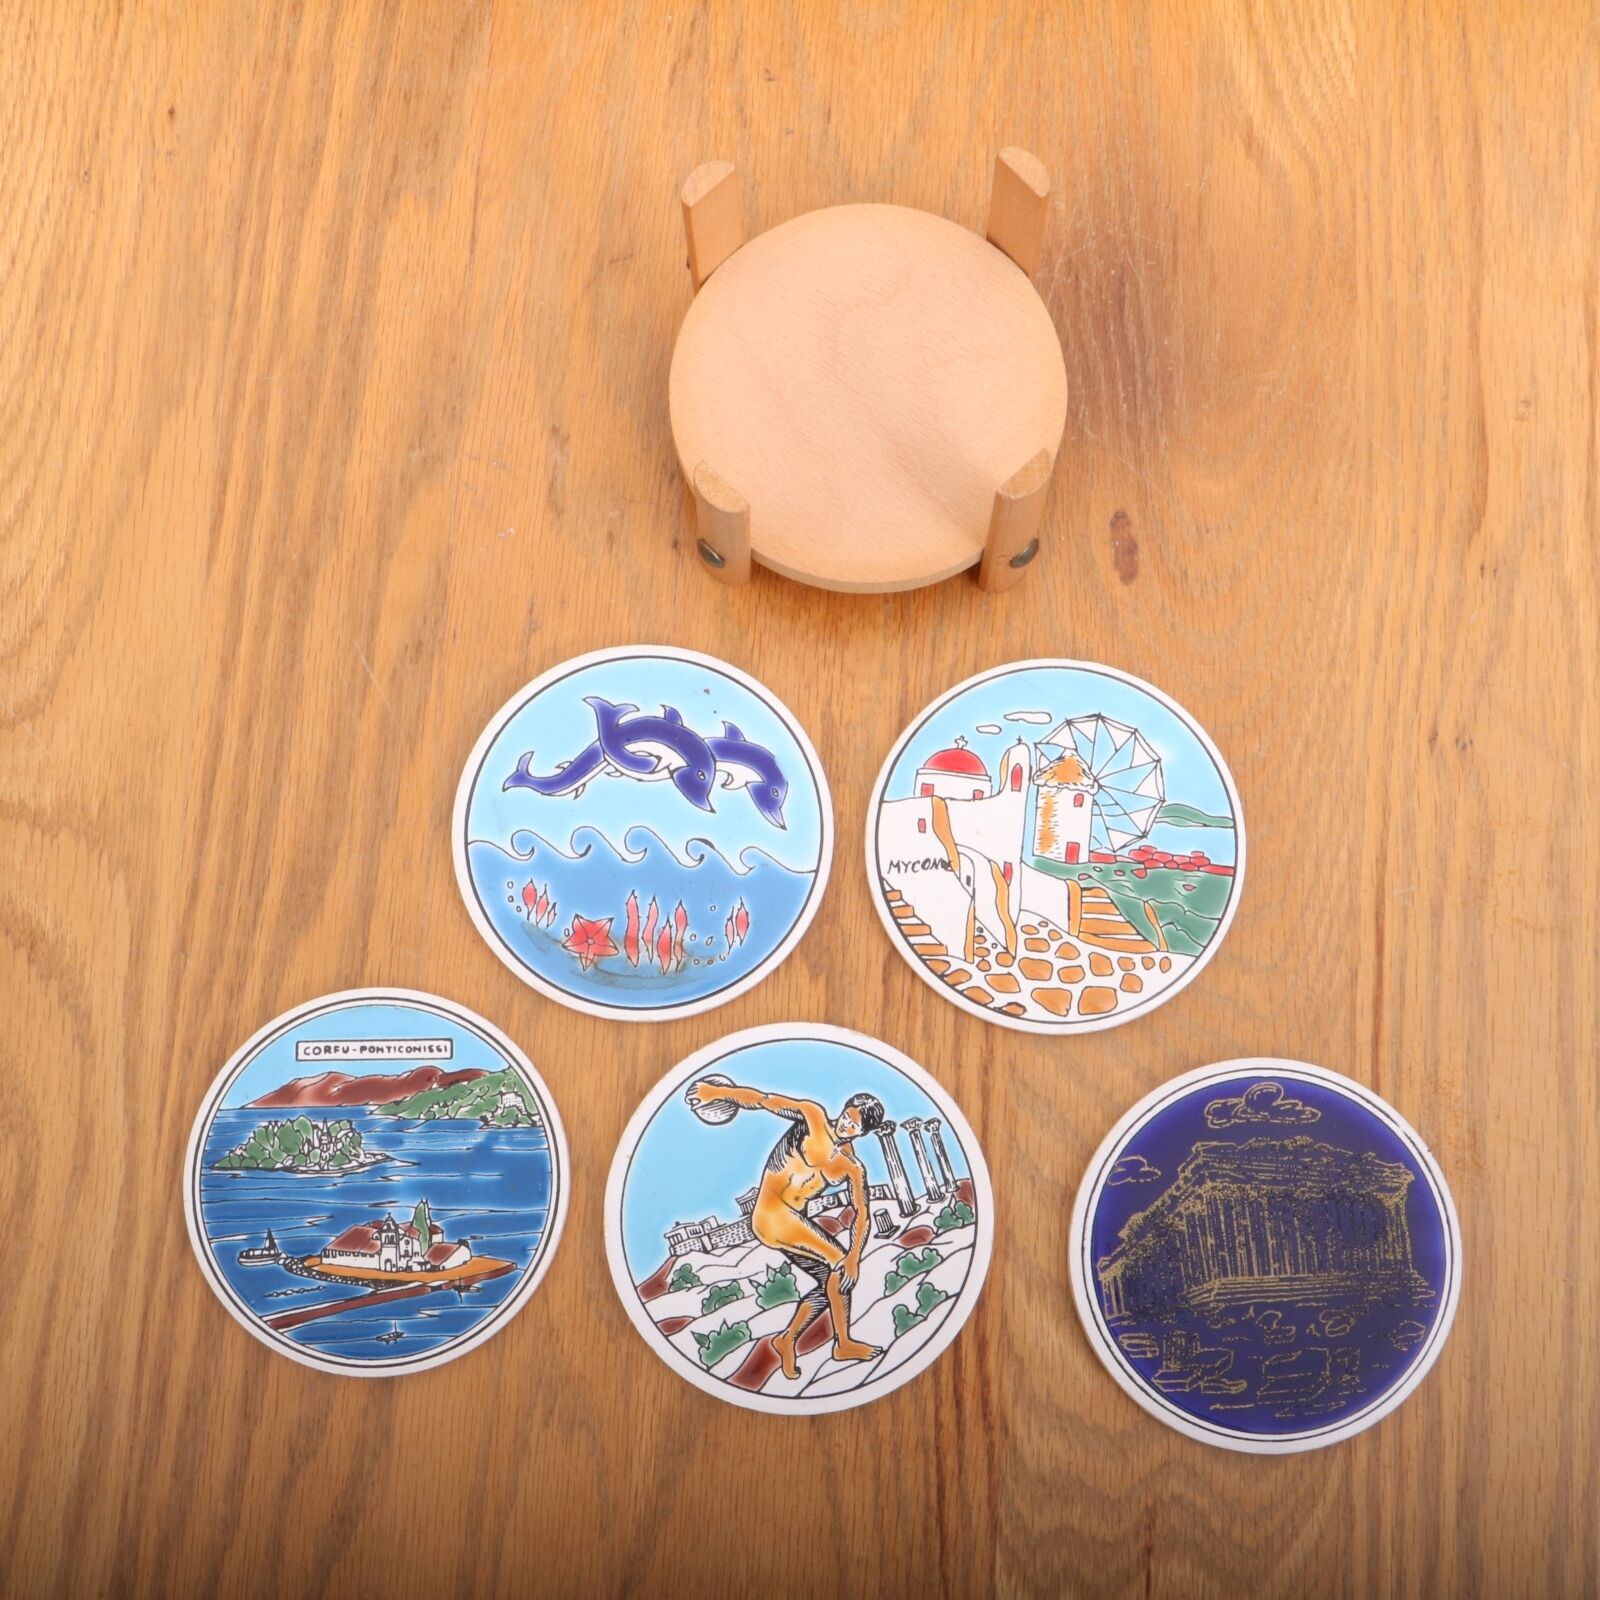 5 Vintage Greece Drink Coasters With Wood Rack